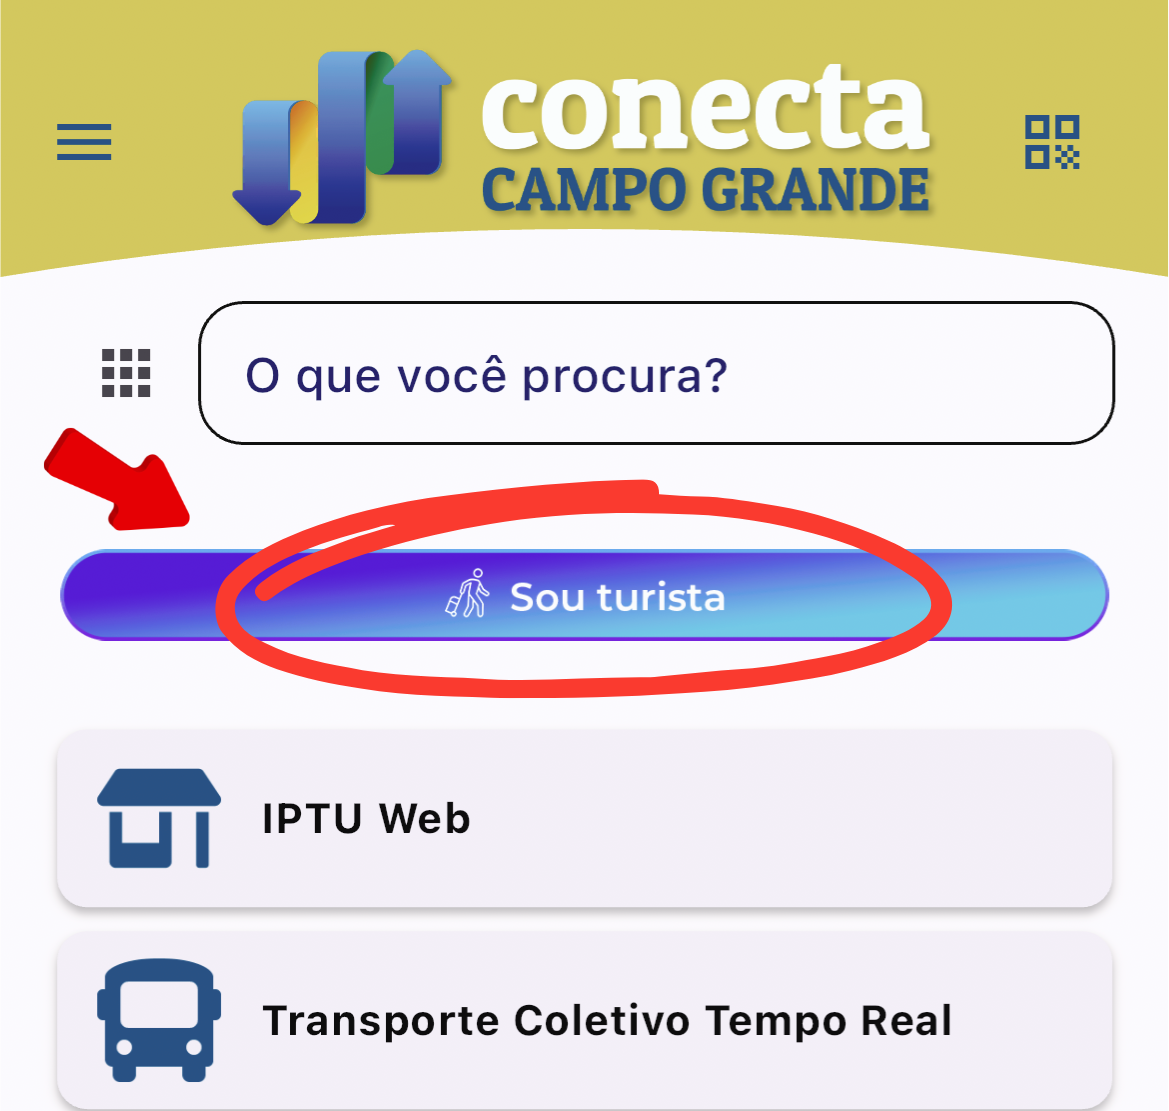 Aplicativo 'Conecta Campo Grande' agora tem botão exclusivo para turistas